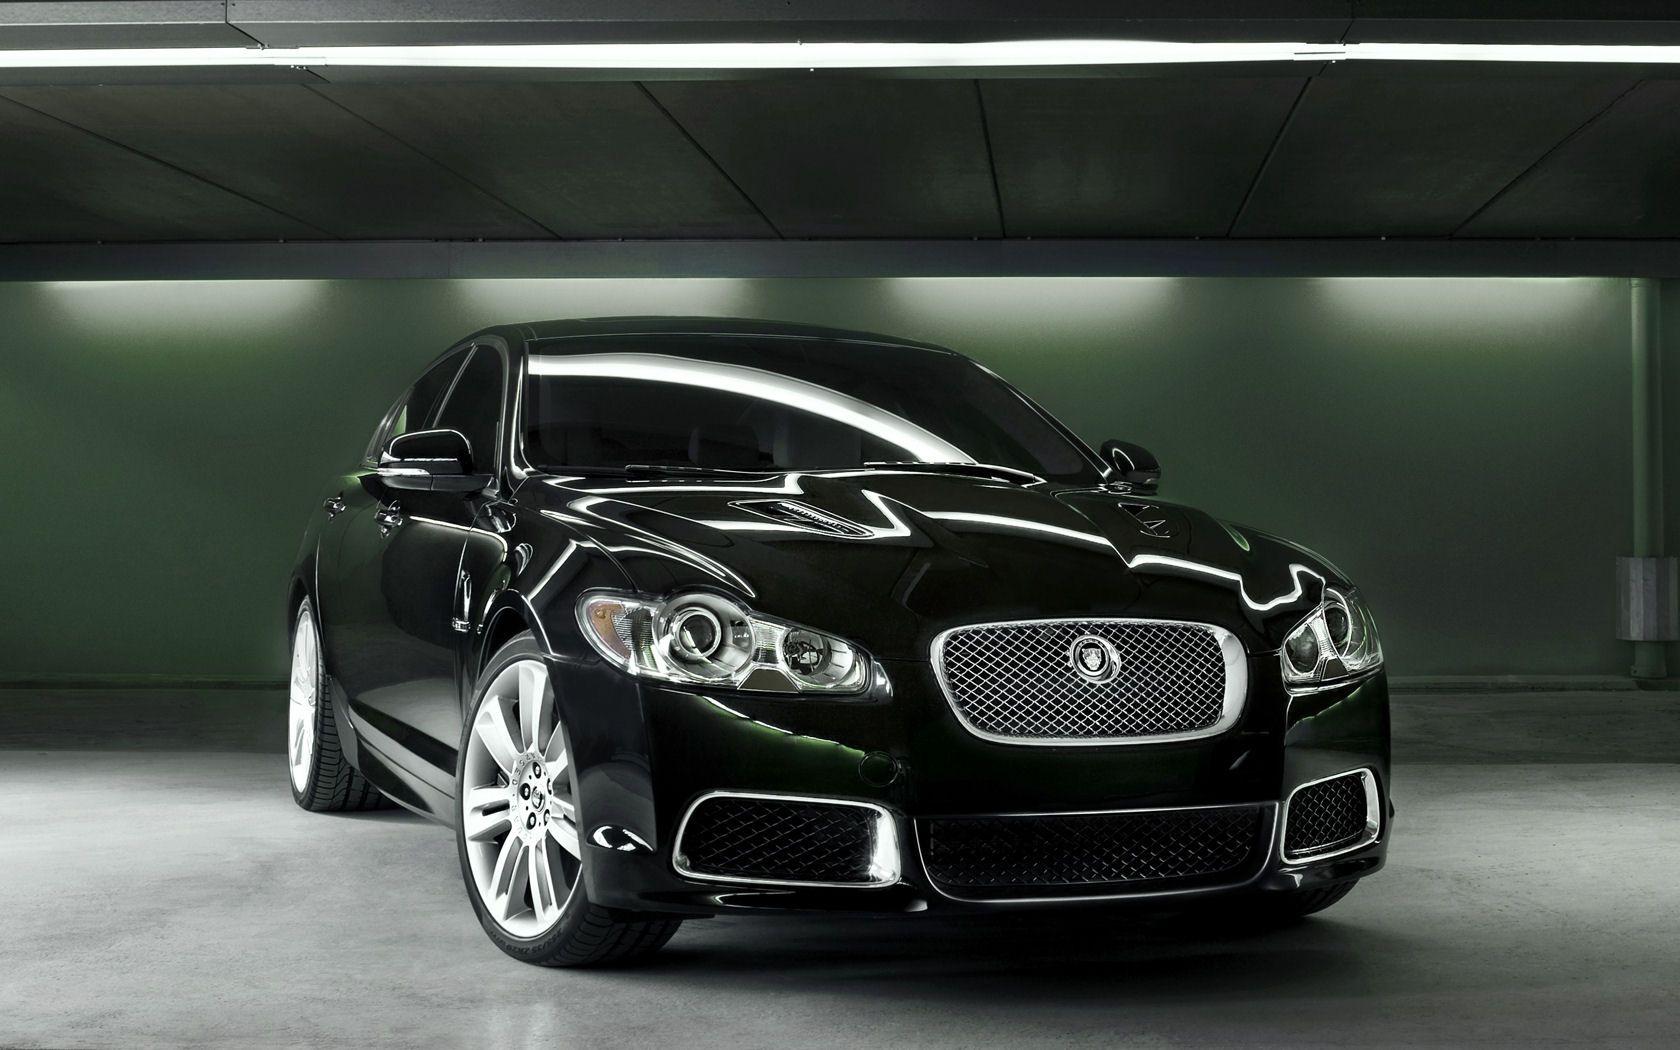 black jaguar cars wallpapers hd